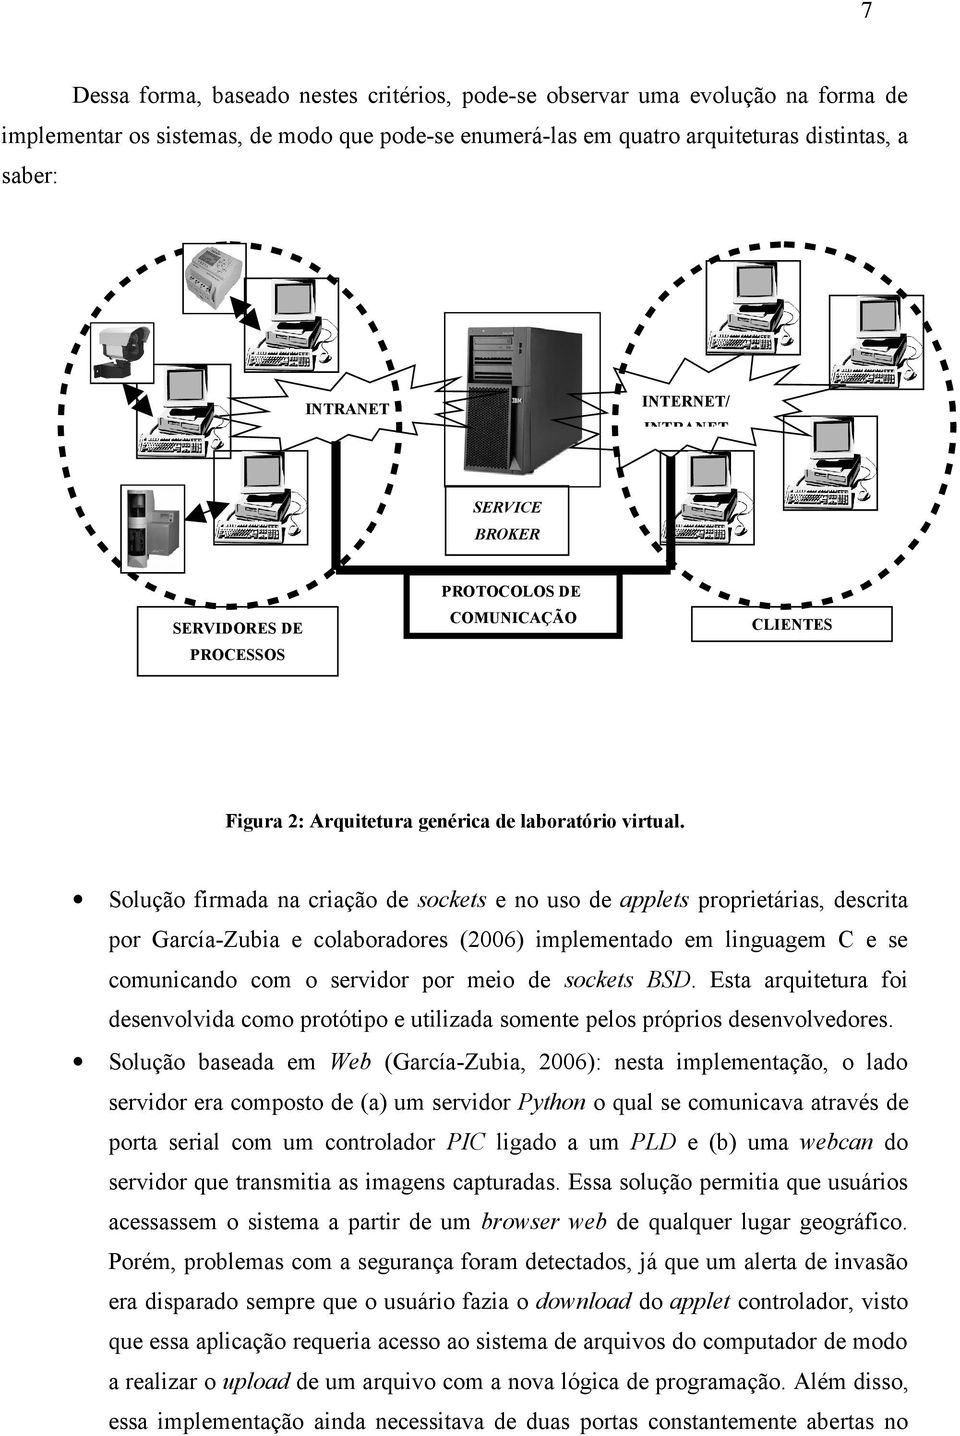 Solução firmada na criação de sockets e no uso de applets proprietárias, descrita por García-Zubia e colaboradores (2006) implementado em linguagem C e se comunicando com o servidor por meio de